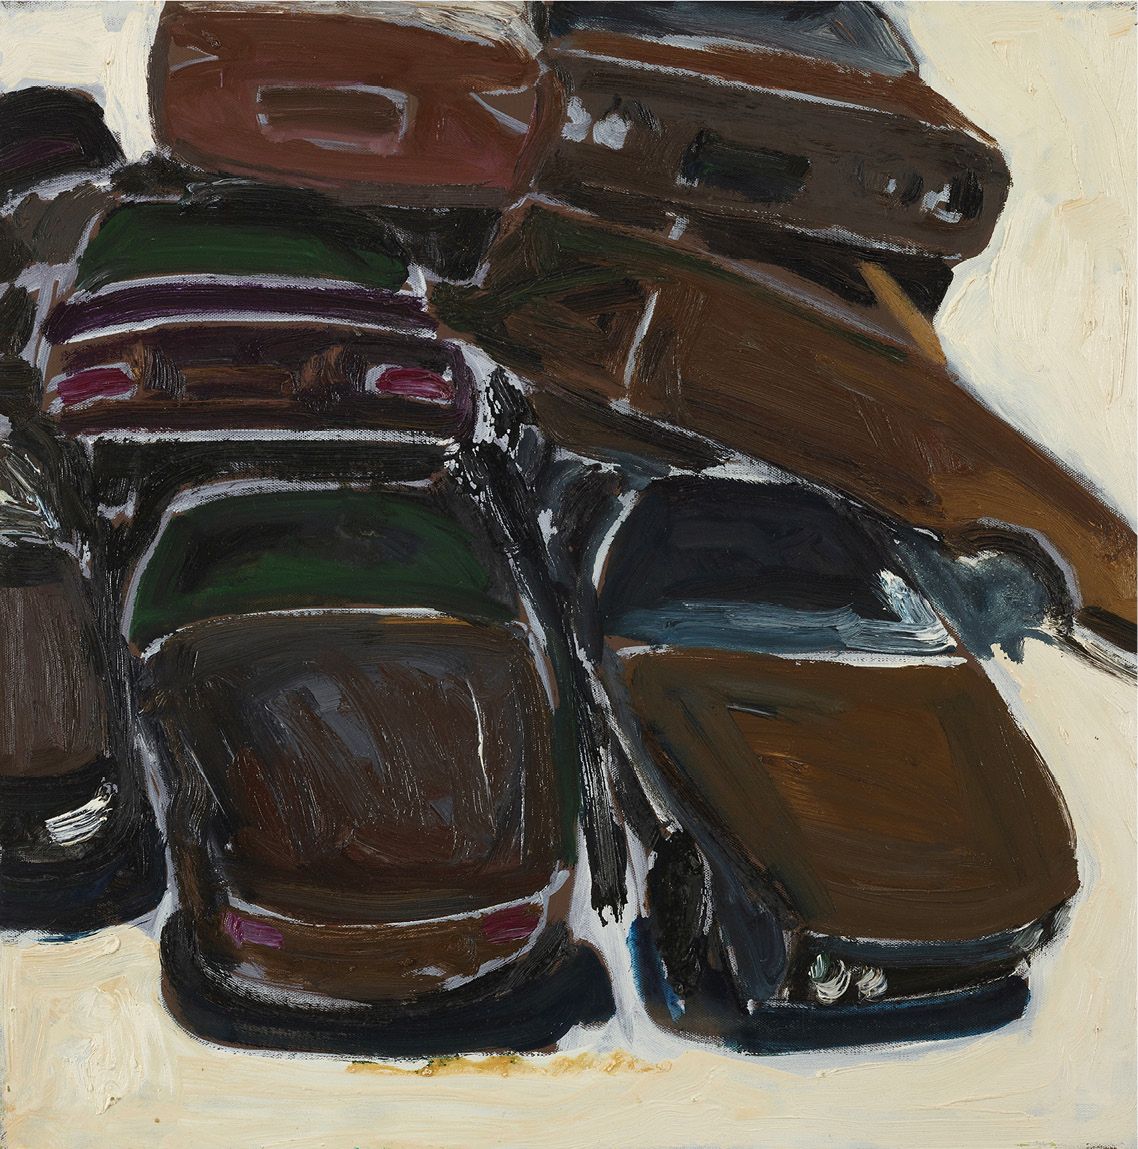 Salah SAOULI (né en 1962) * 无标题，2010
布面油画
60 x 60 cm - 23.62 x 23.62 in.
布面油画